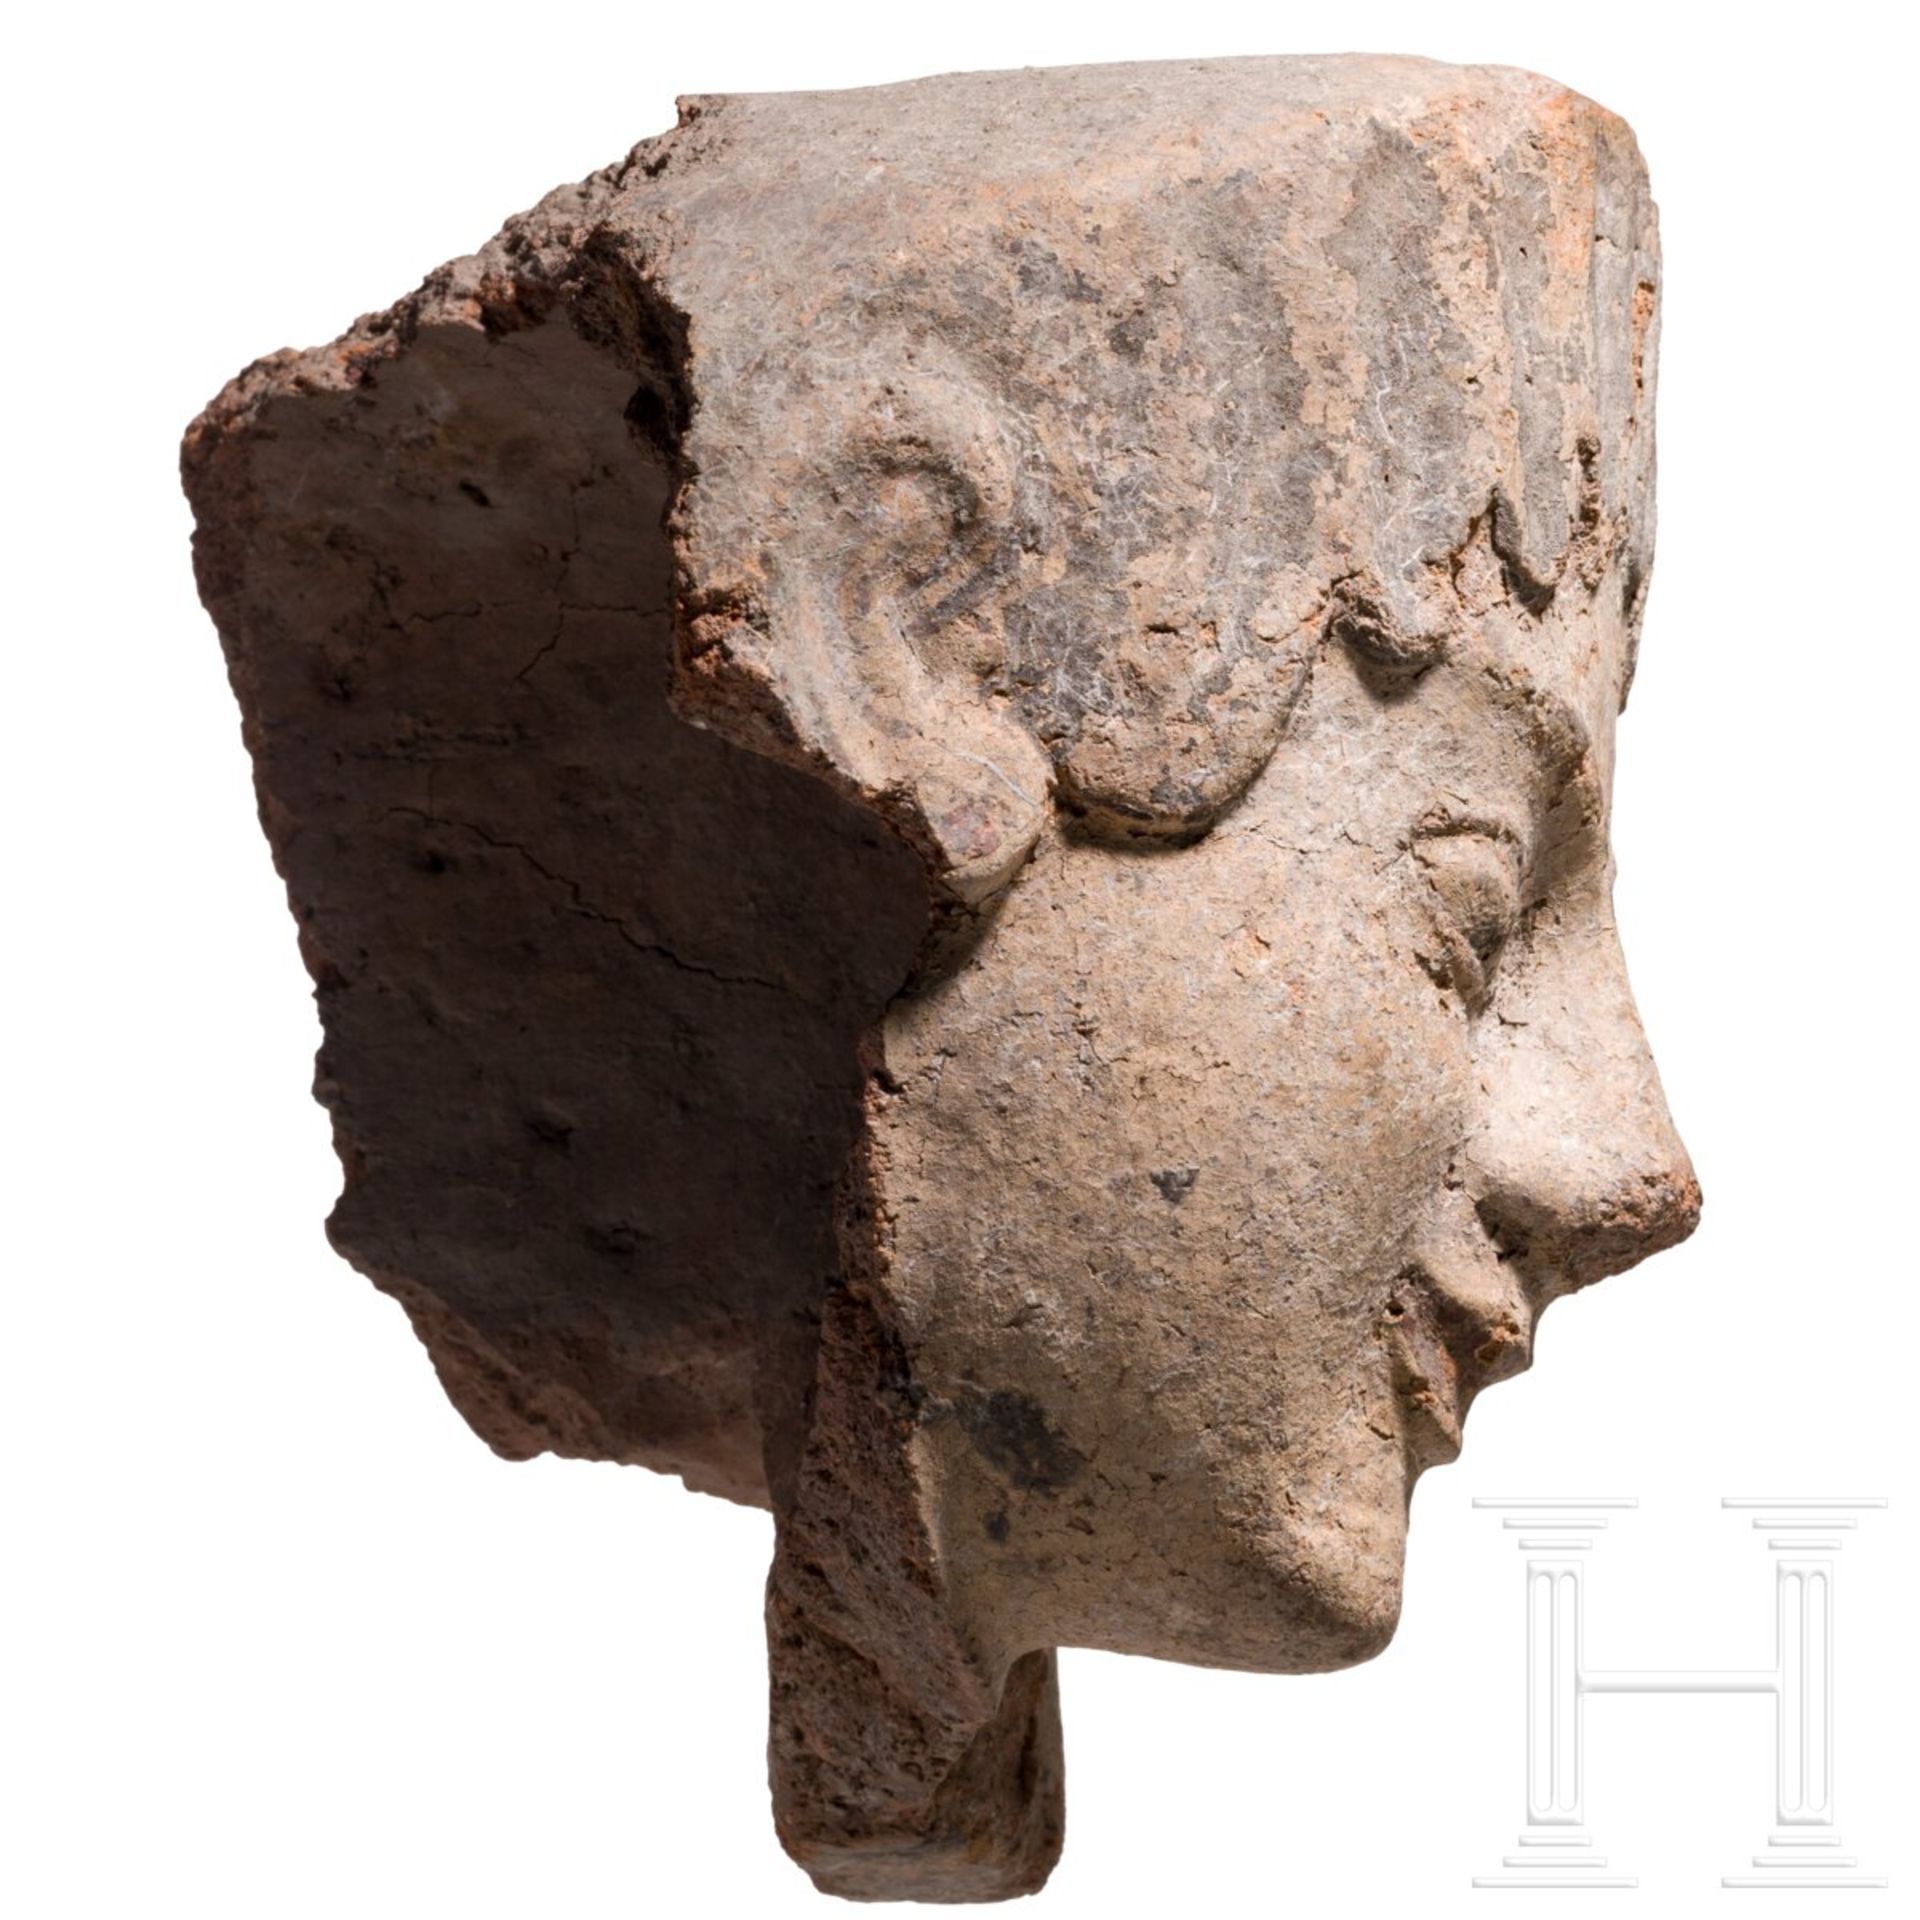 Antefix aus Ton mit Bemalungsresten, etruskisch, spätes 6. Jhdt. v. Chr. - Image 3 of 5